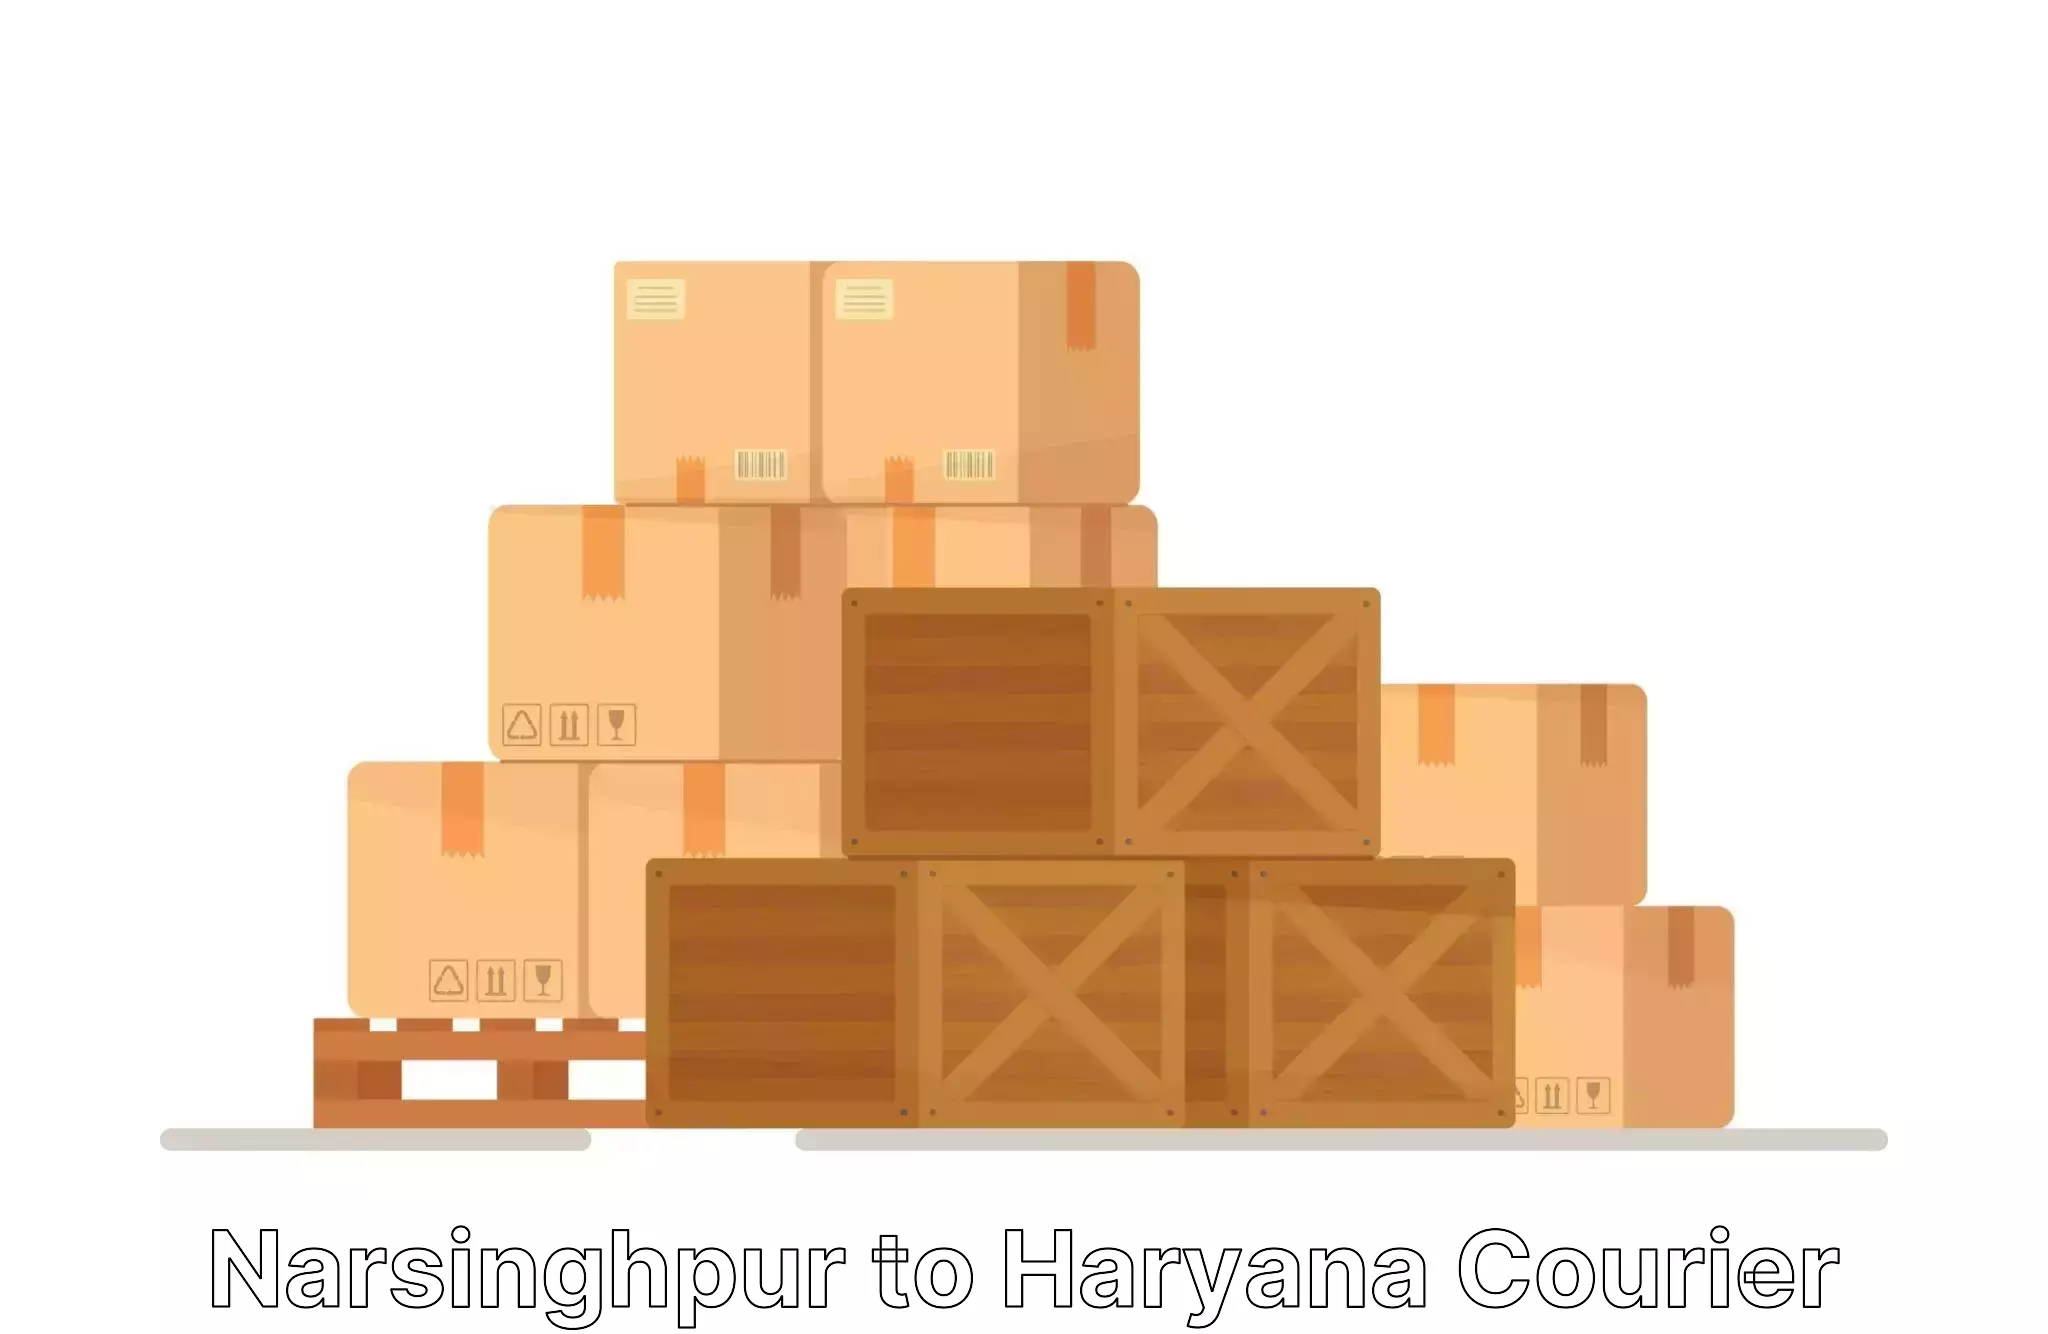 Door-to-door relocation services Narsinghpur to Hisar